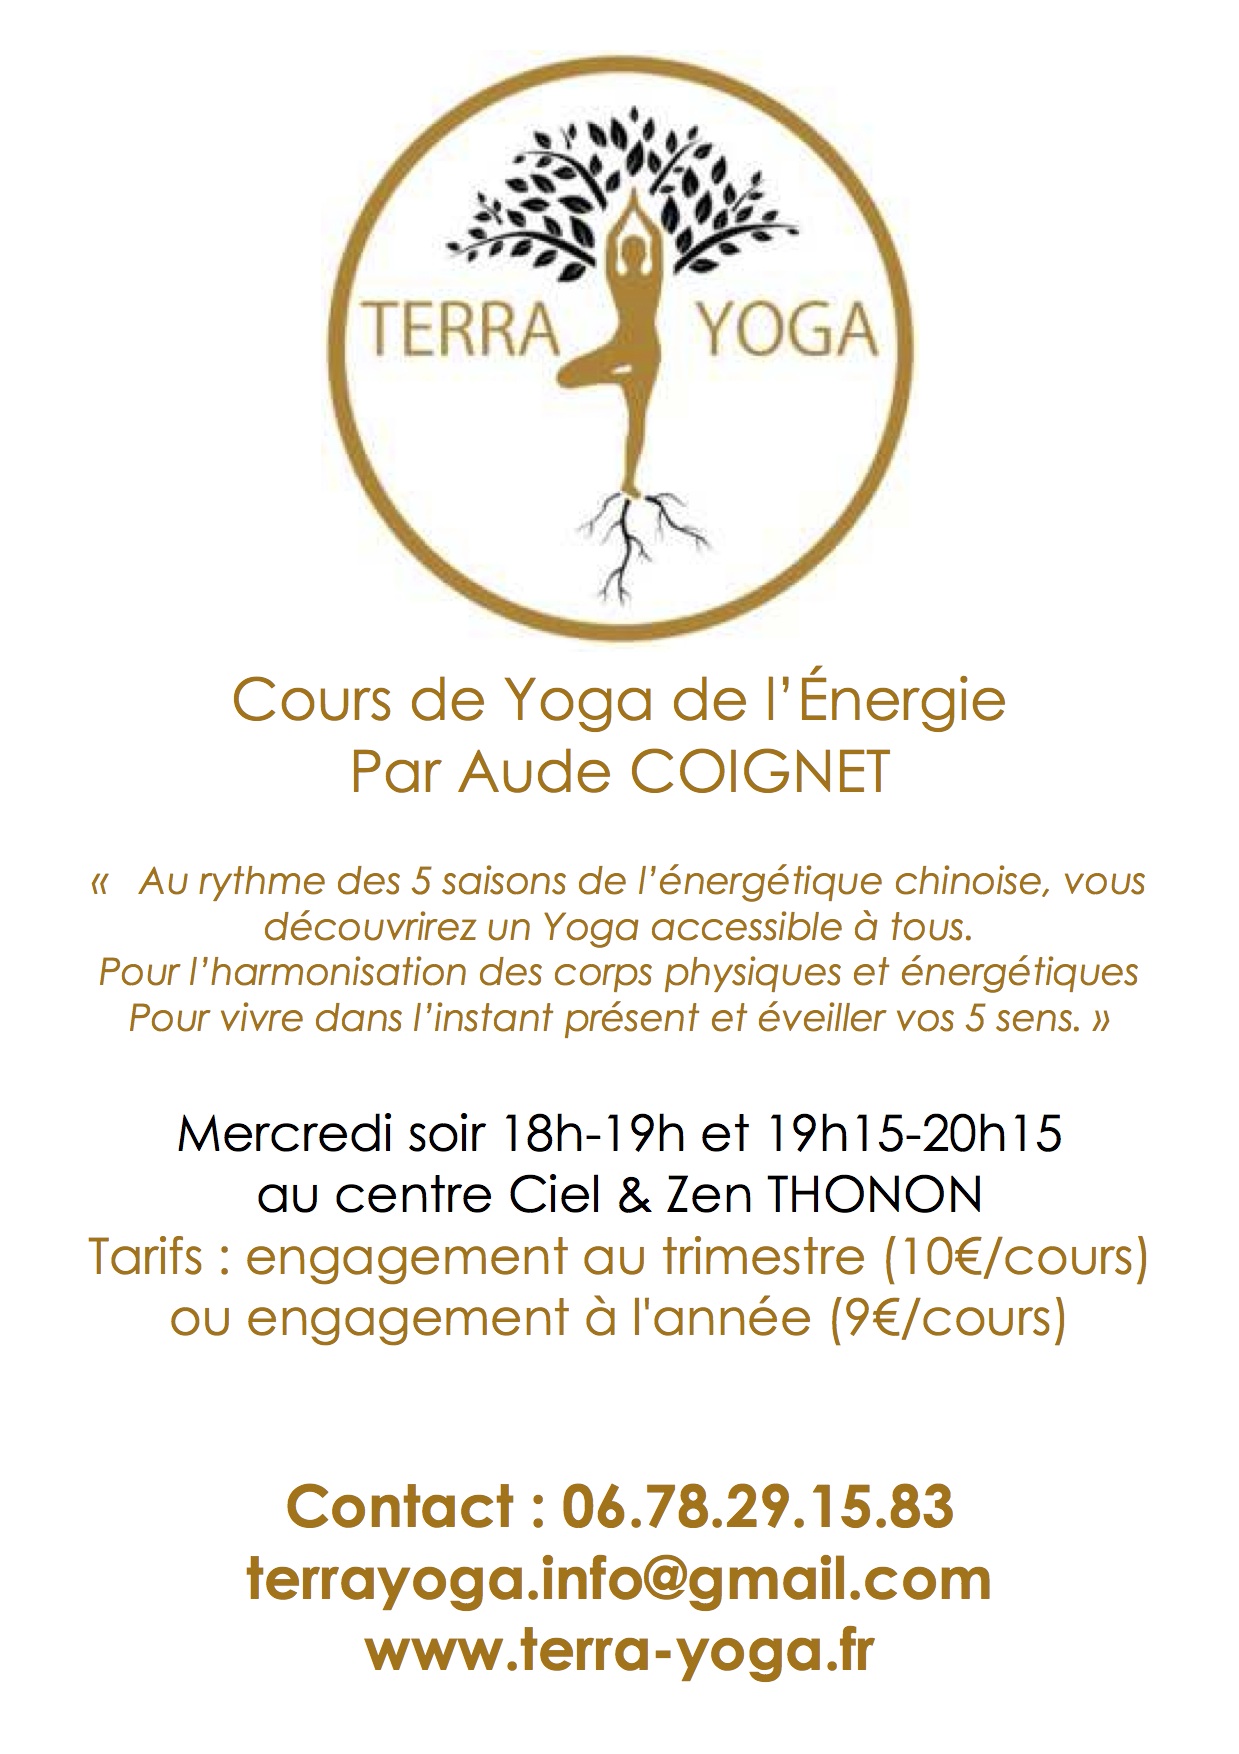 Dernière version Affiche infos Terra Yoga 2